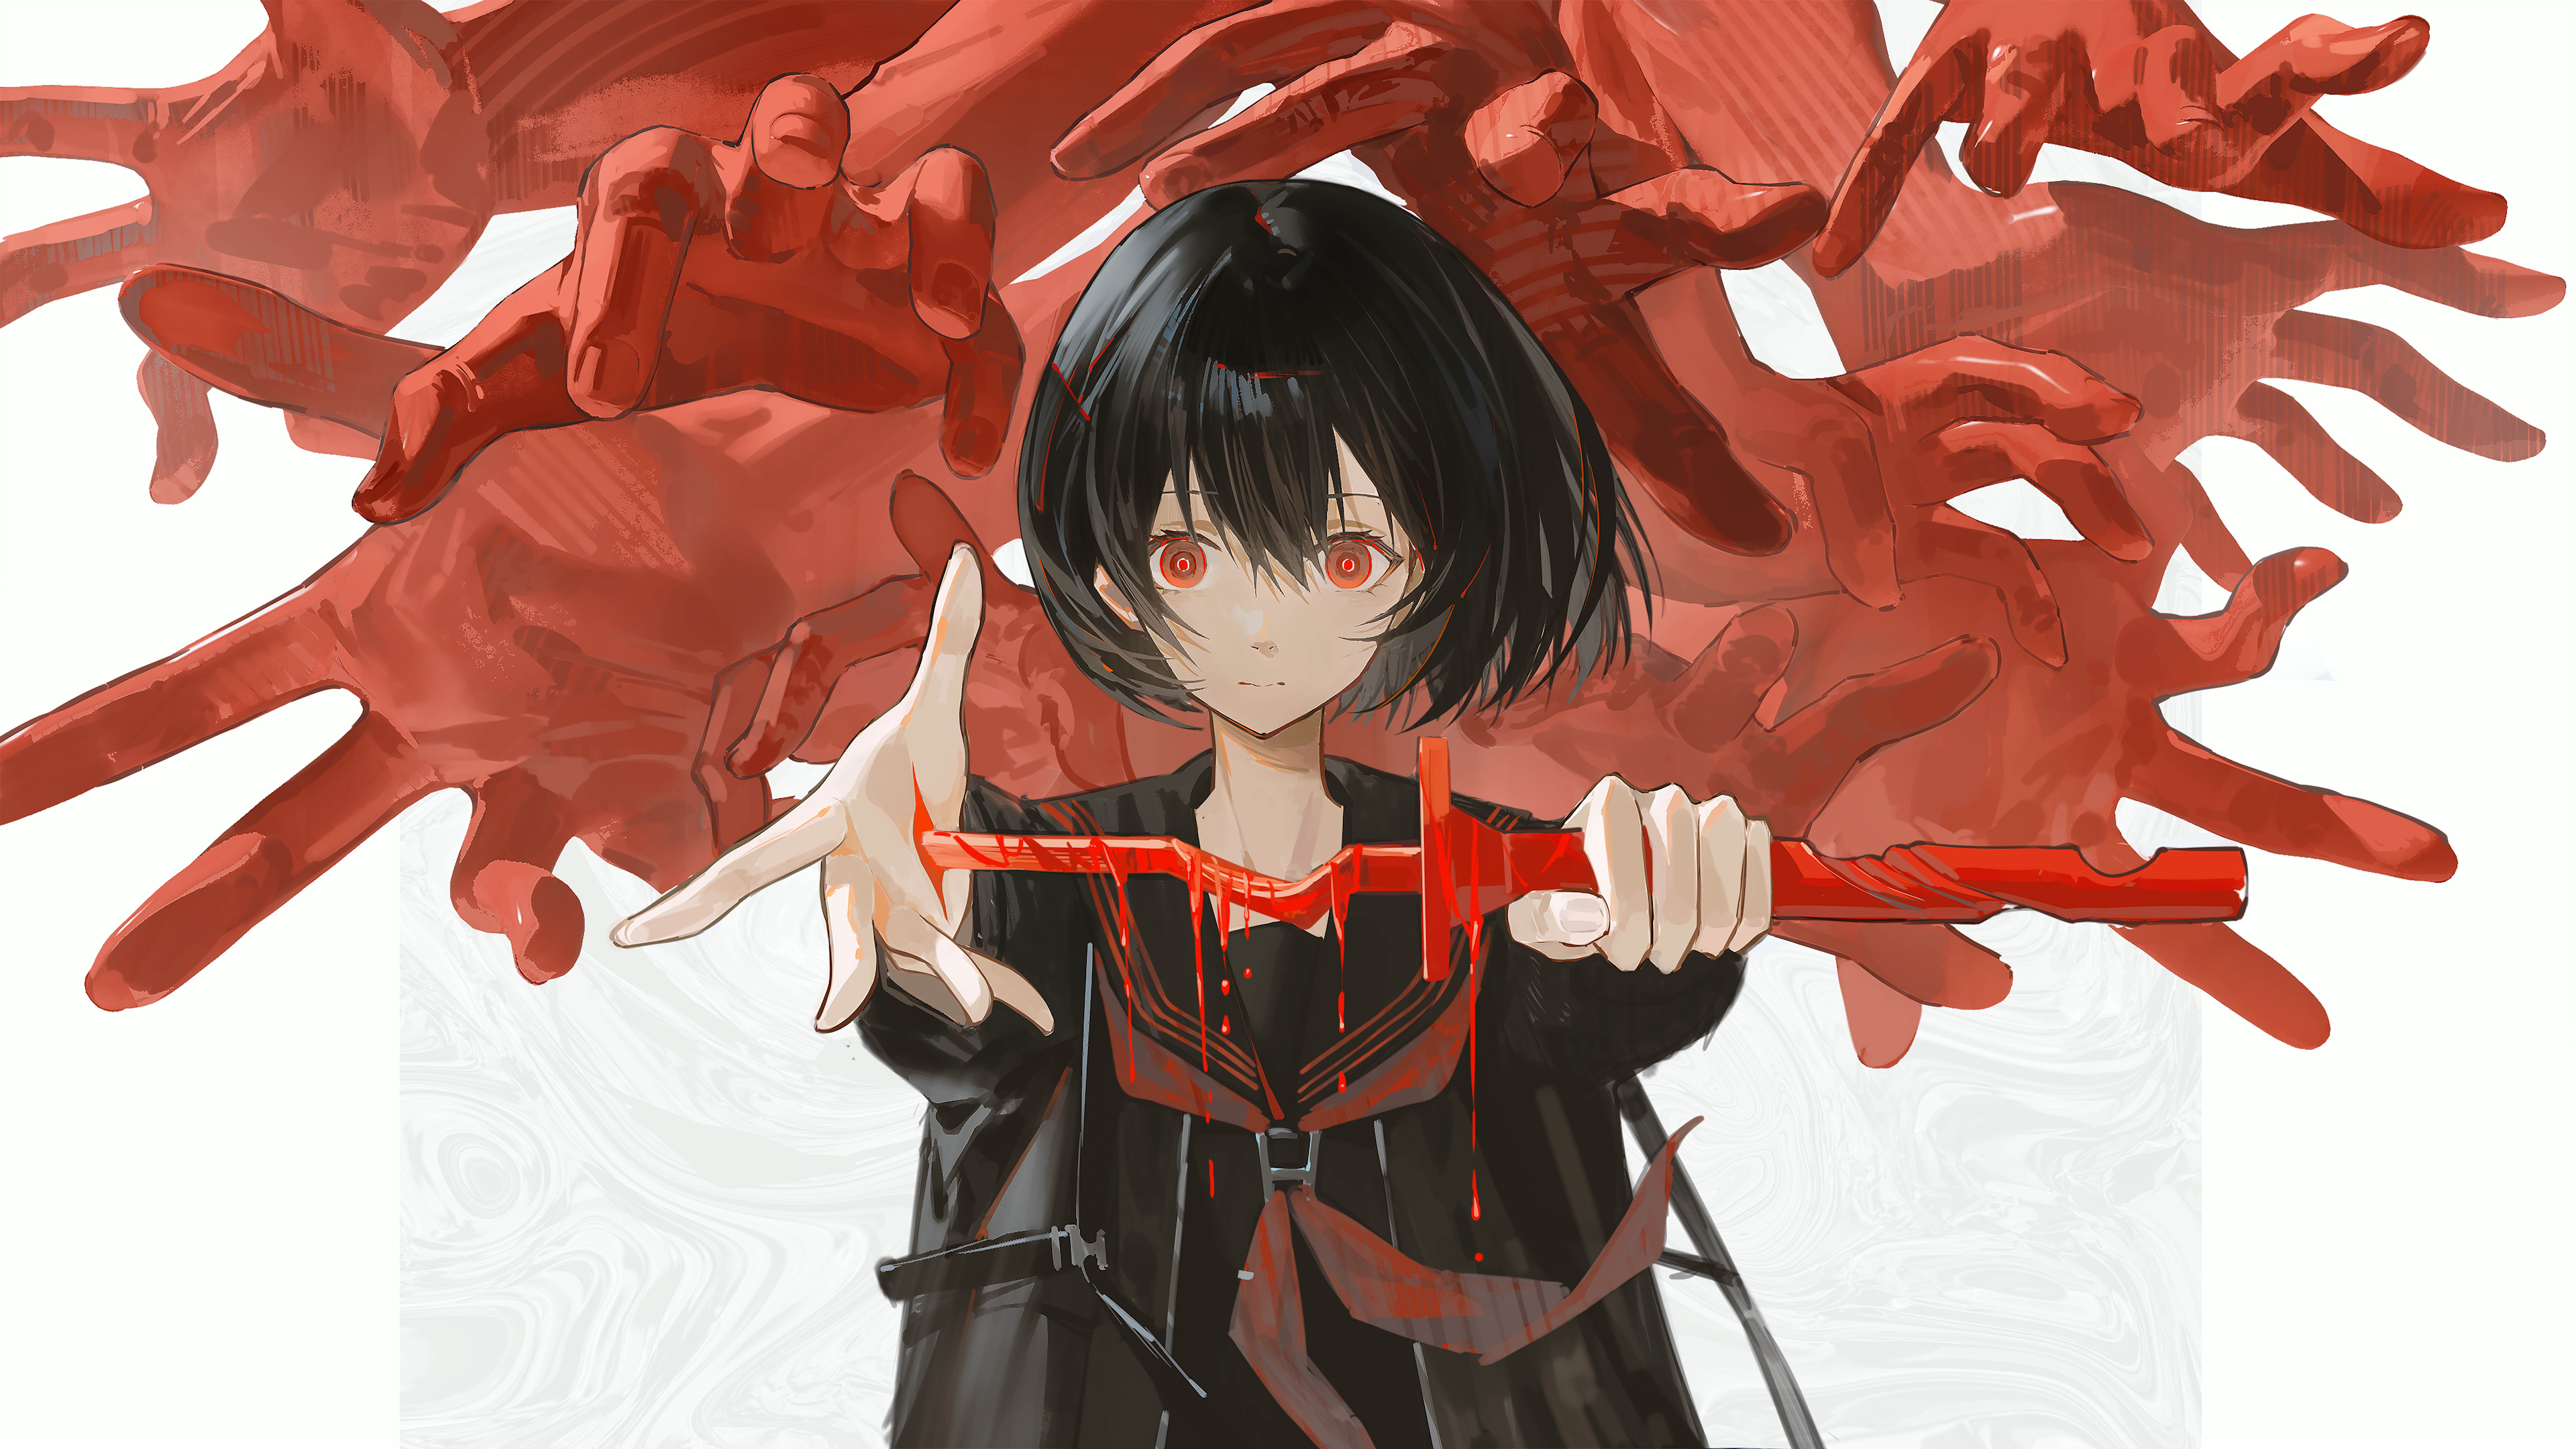 Anime Anime Girls Sword Hands Black Hair Red Eyes 3840x2160